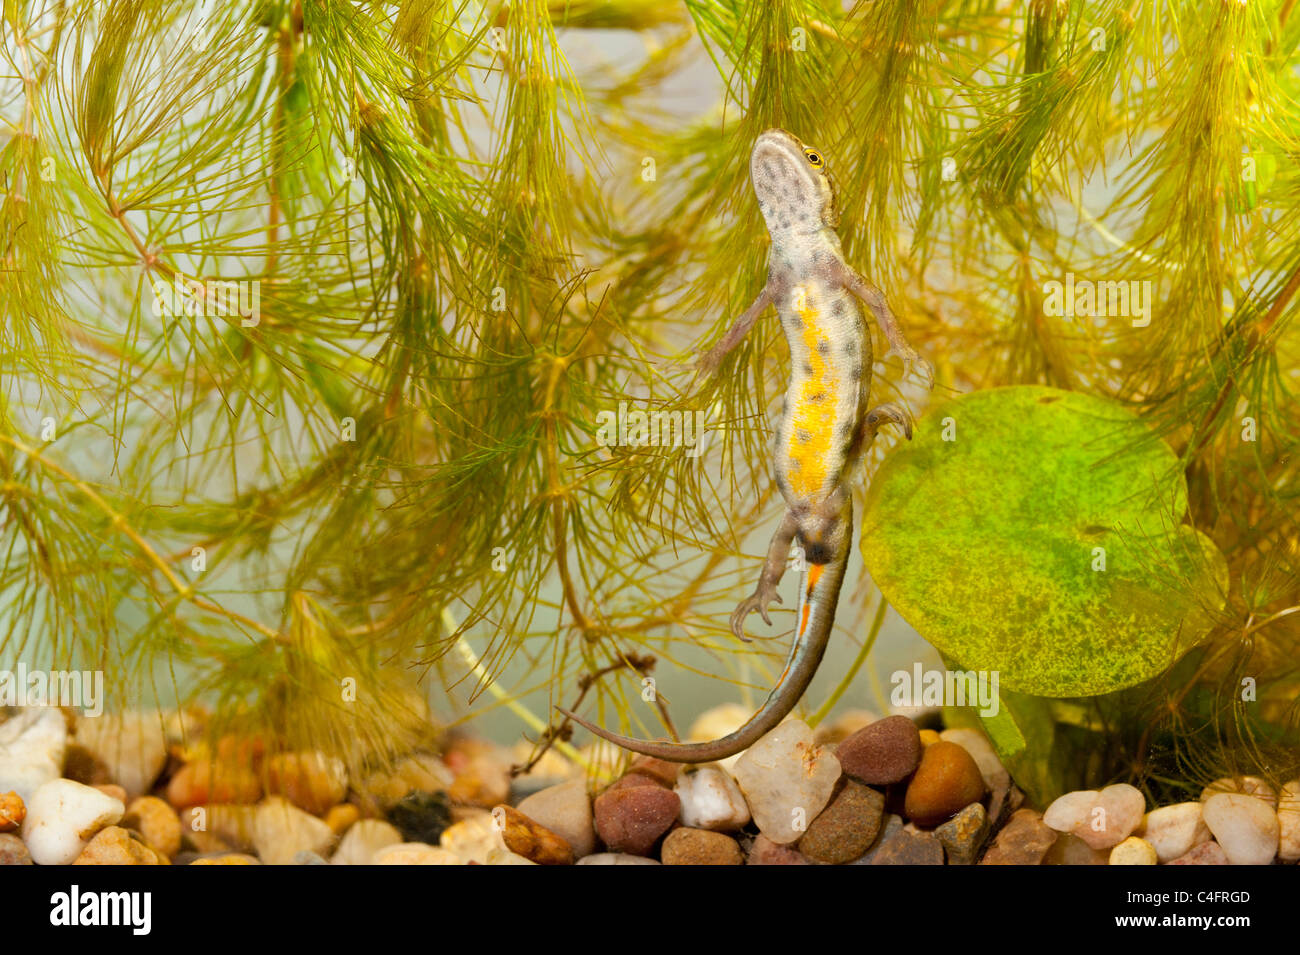 Une femelle Triton tacheté ( Triturus vulgaris ) nager dans un aquarium au Royaume-Uni Banque D'Images